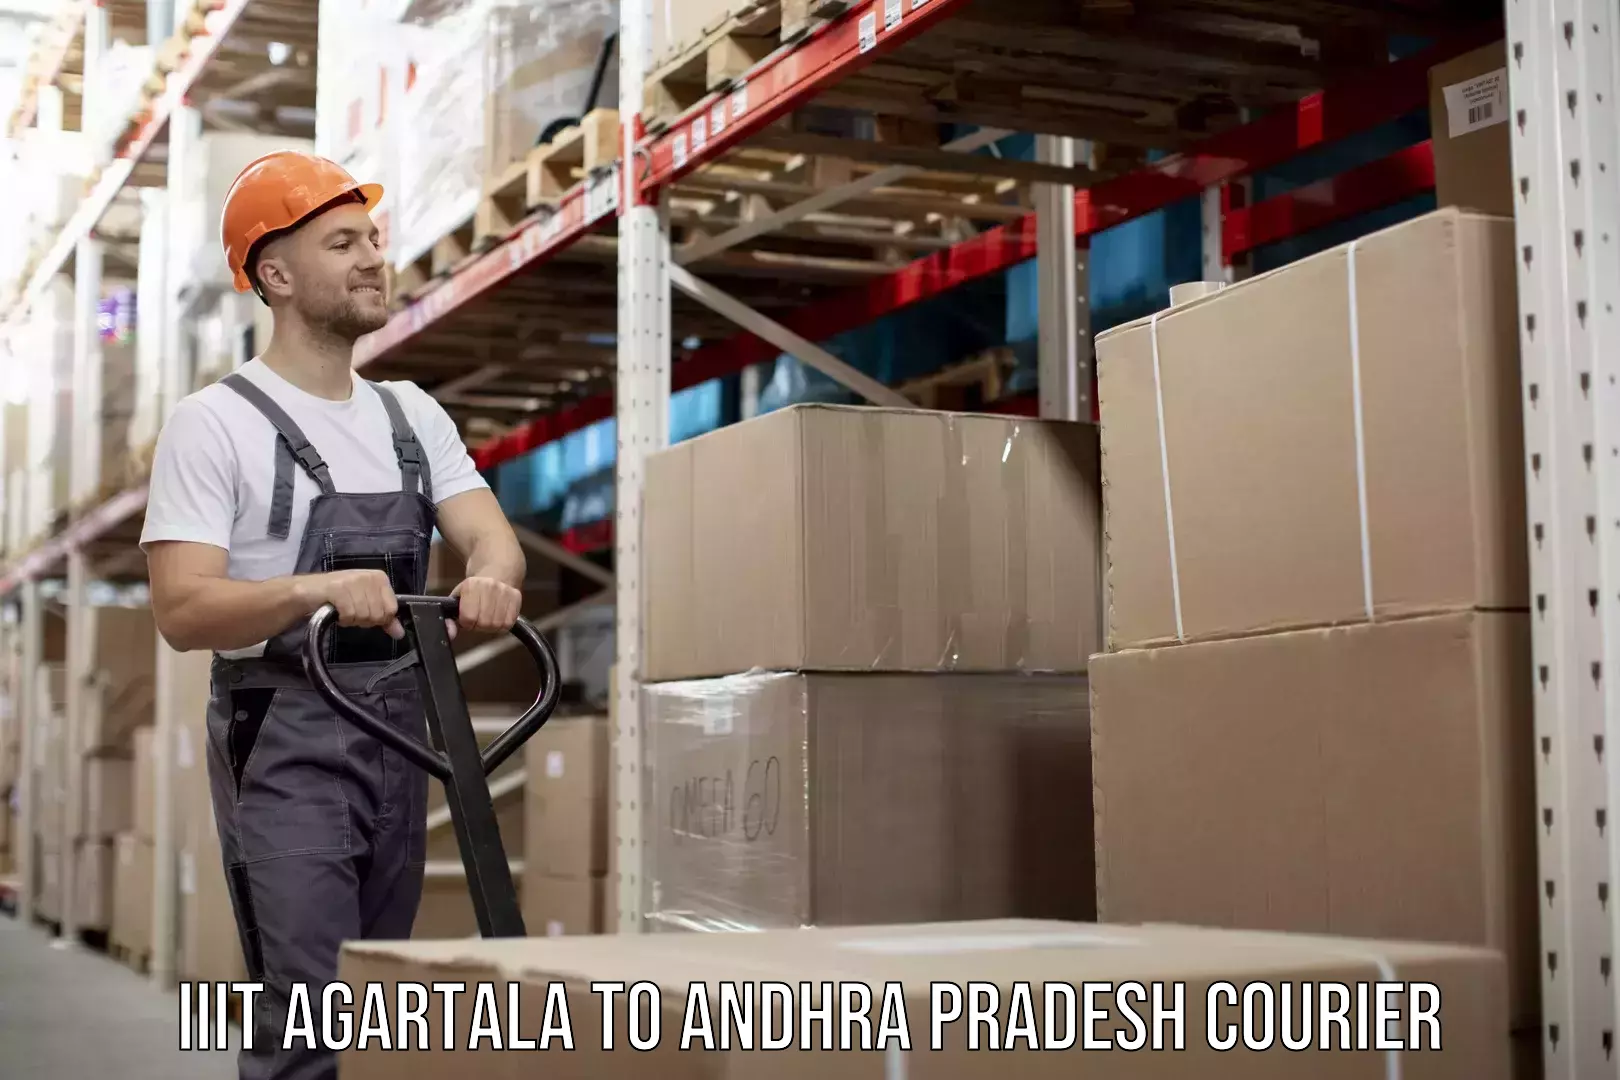 Courier service efficiency IIIT Agartala to Andhra Pradesh